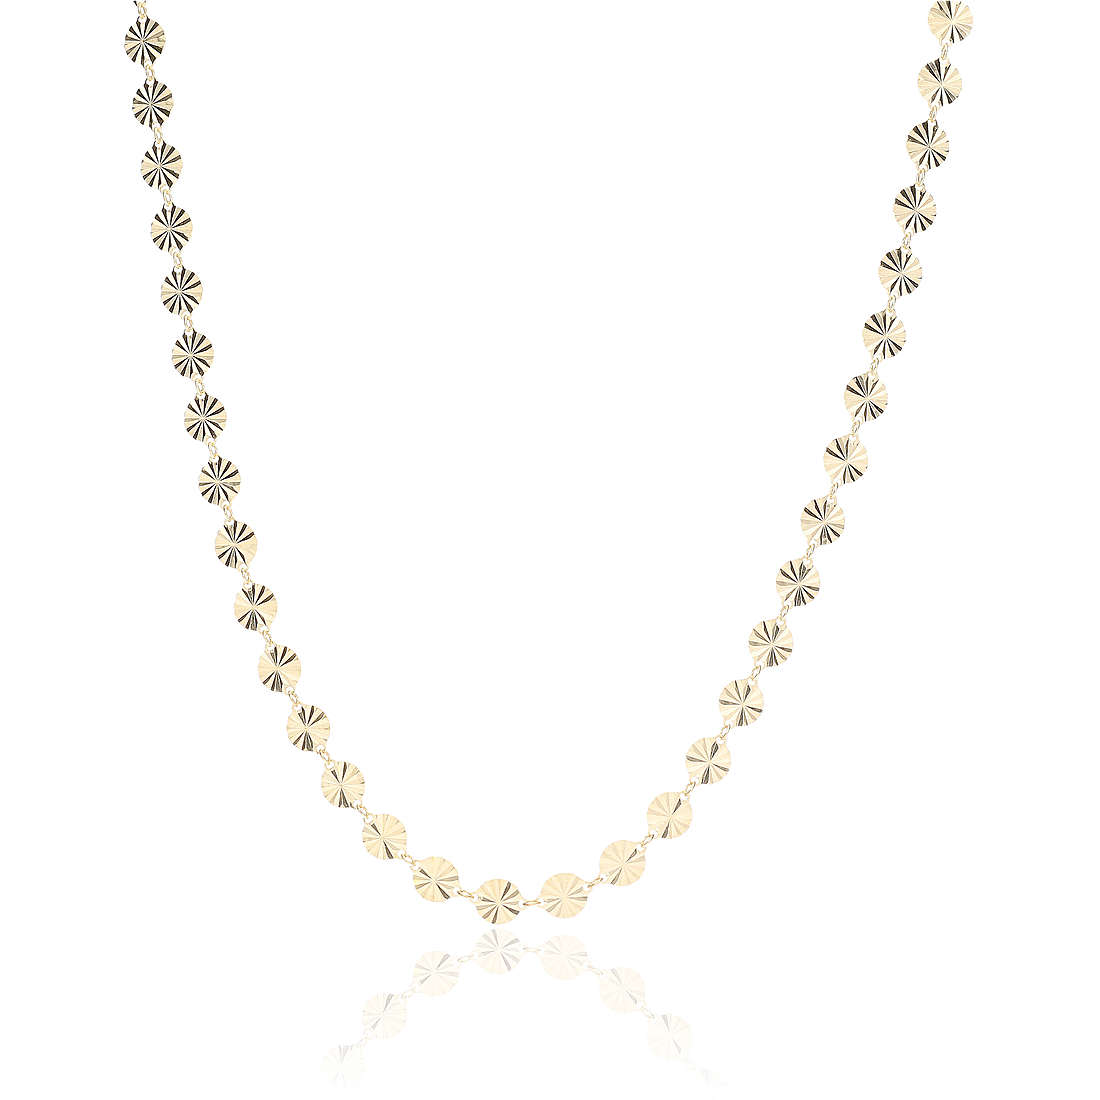 necklace woman jewellery GioiaPura GYCARW0356-G